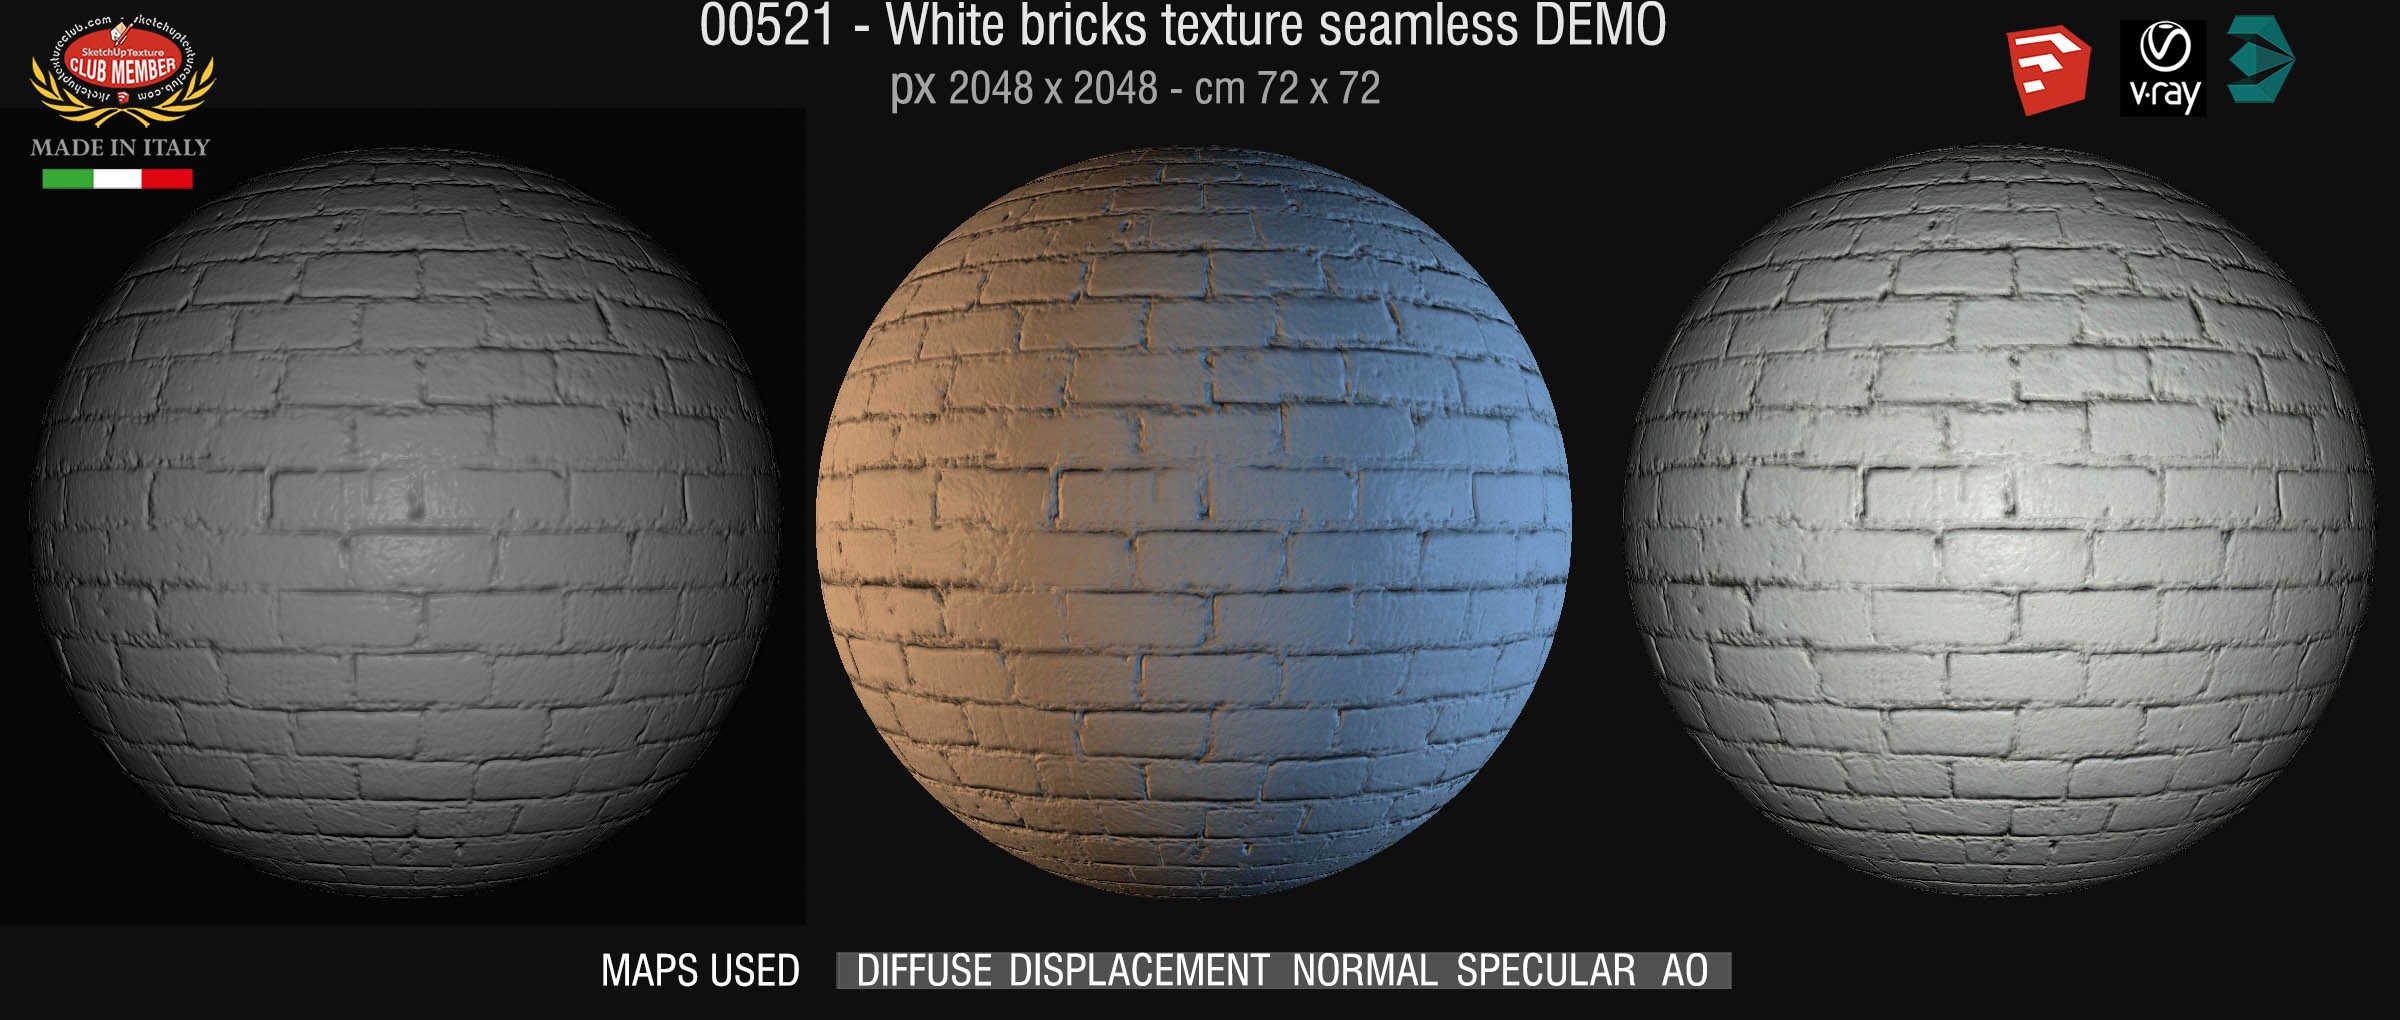 00521 White bricks texture seamless + maps DEMO